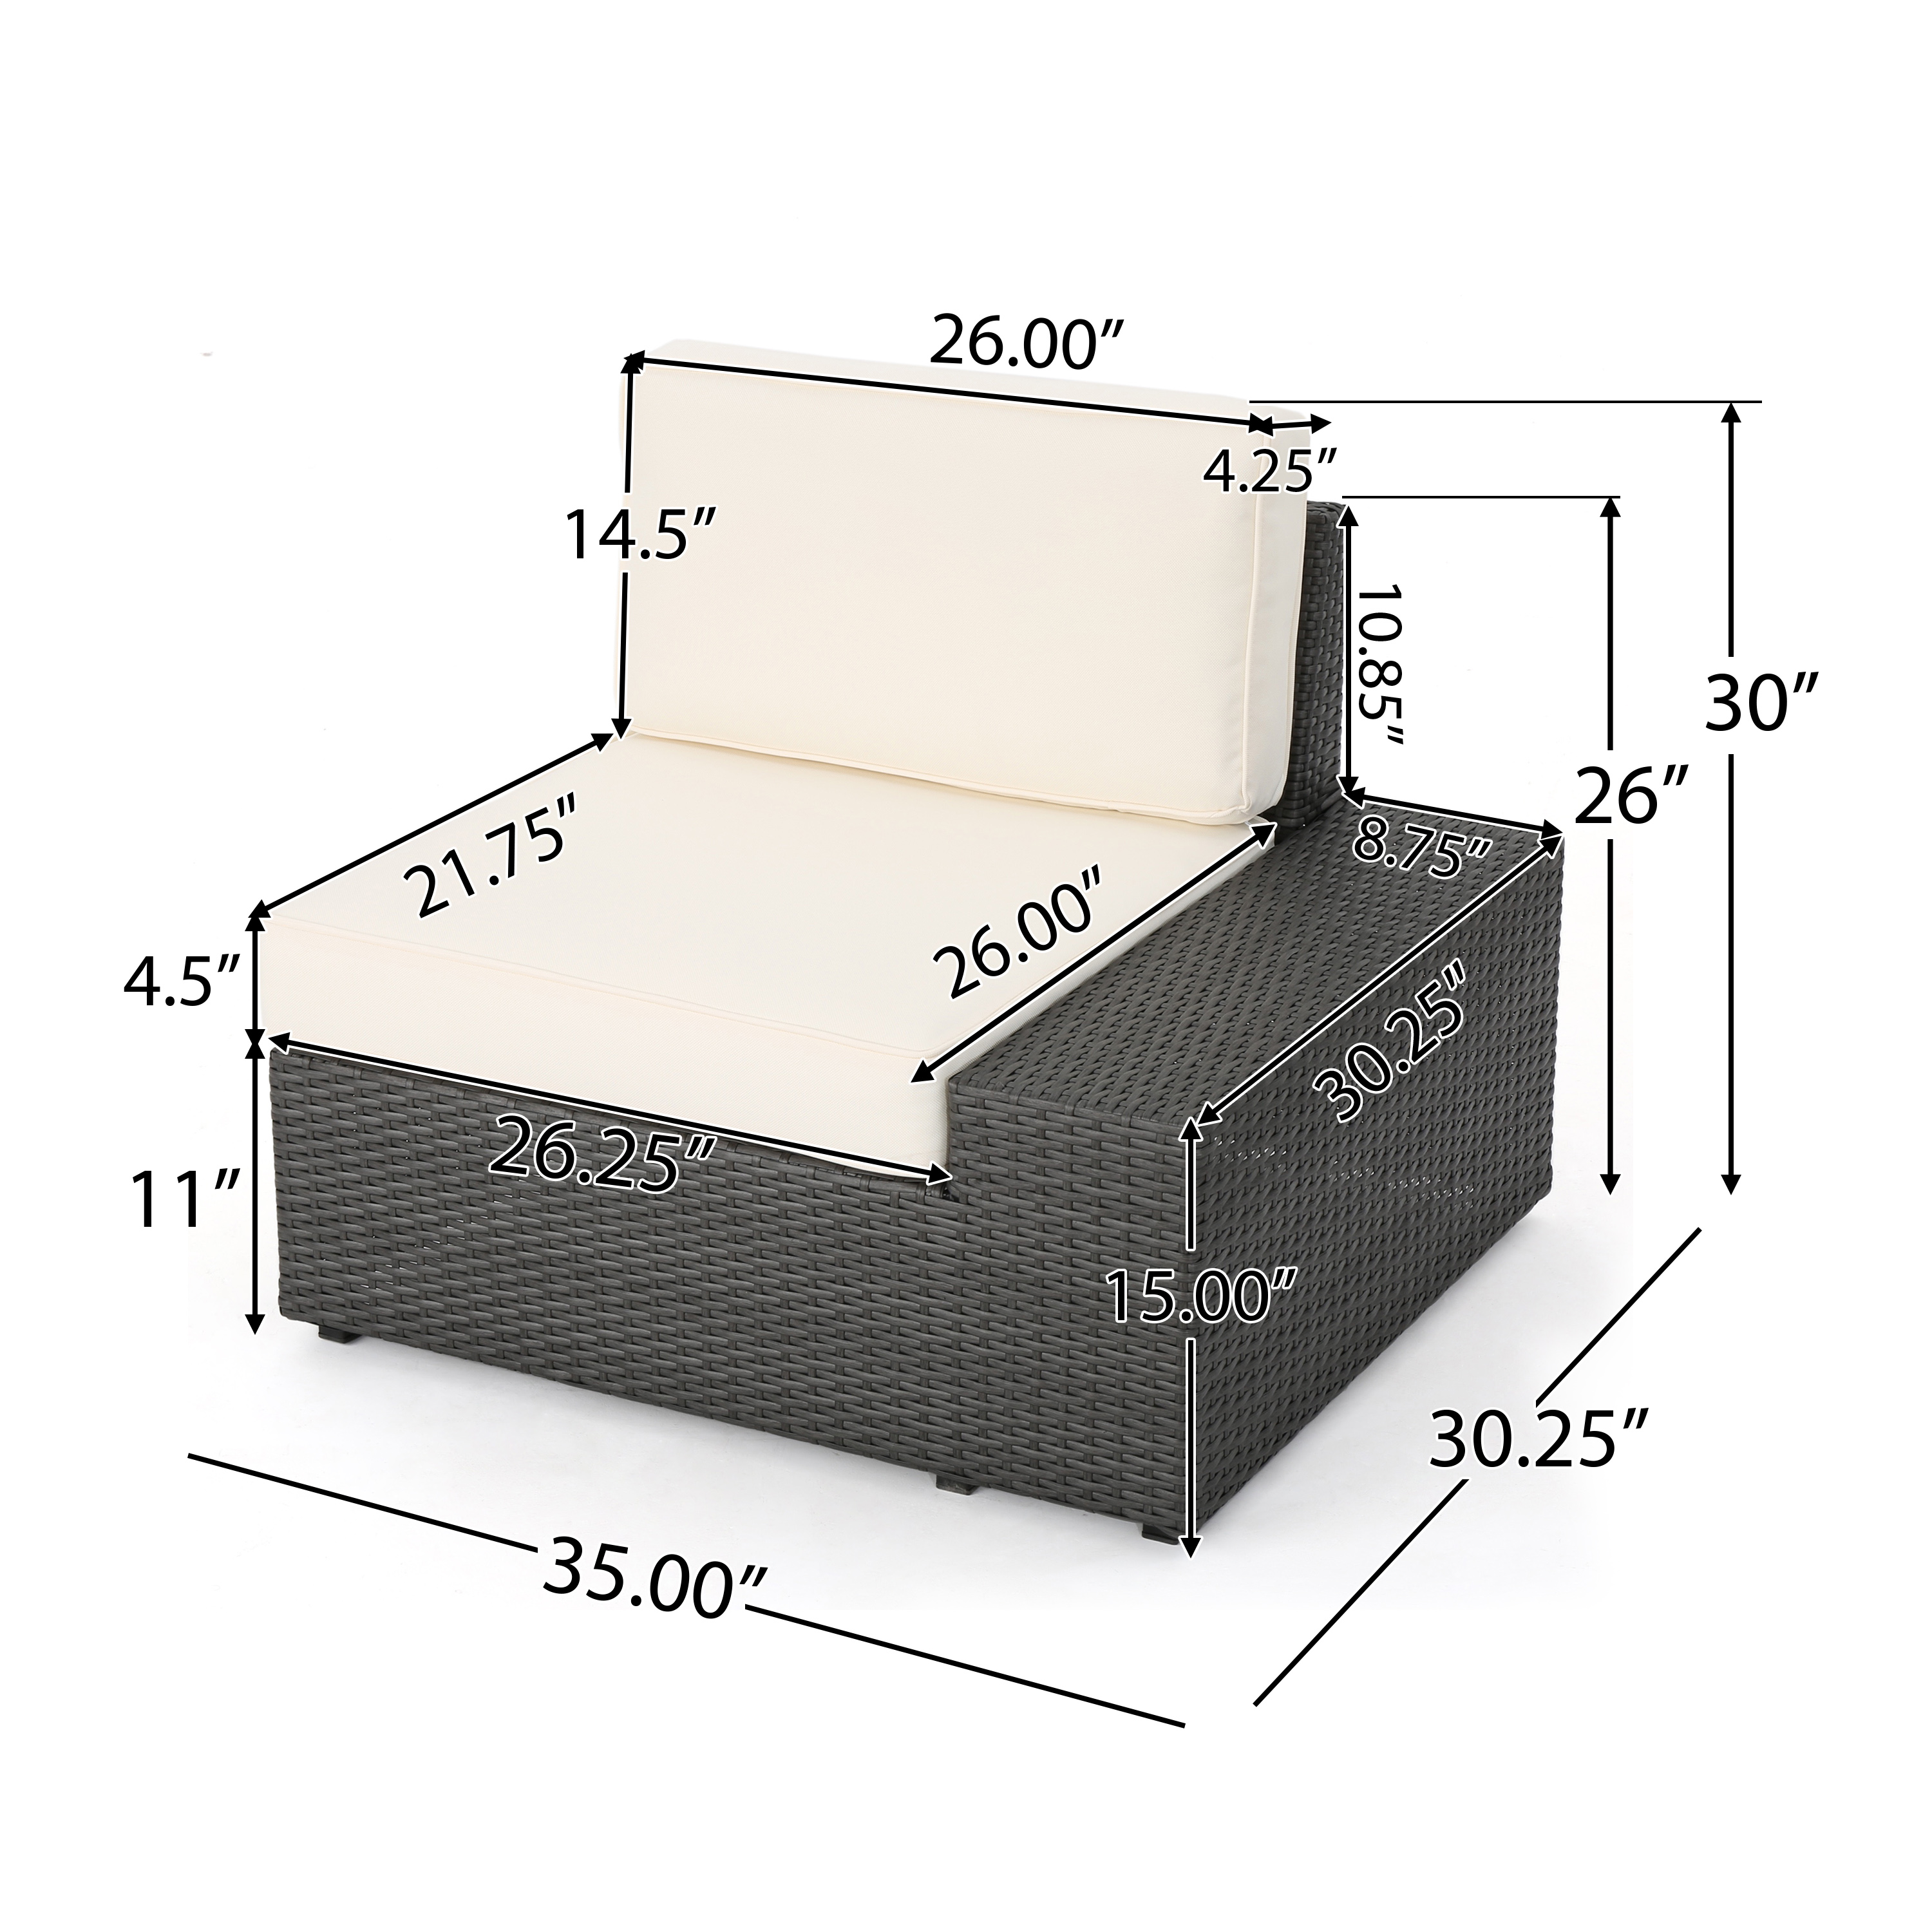 Outdoor 6-piece Grey Wicker Sofa Set - image 3 of 10